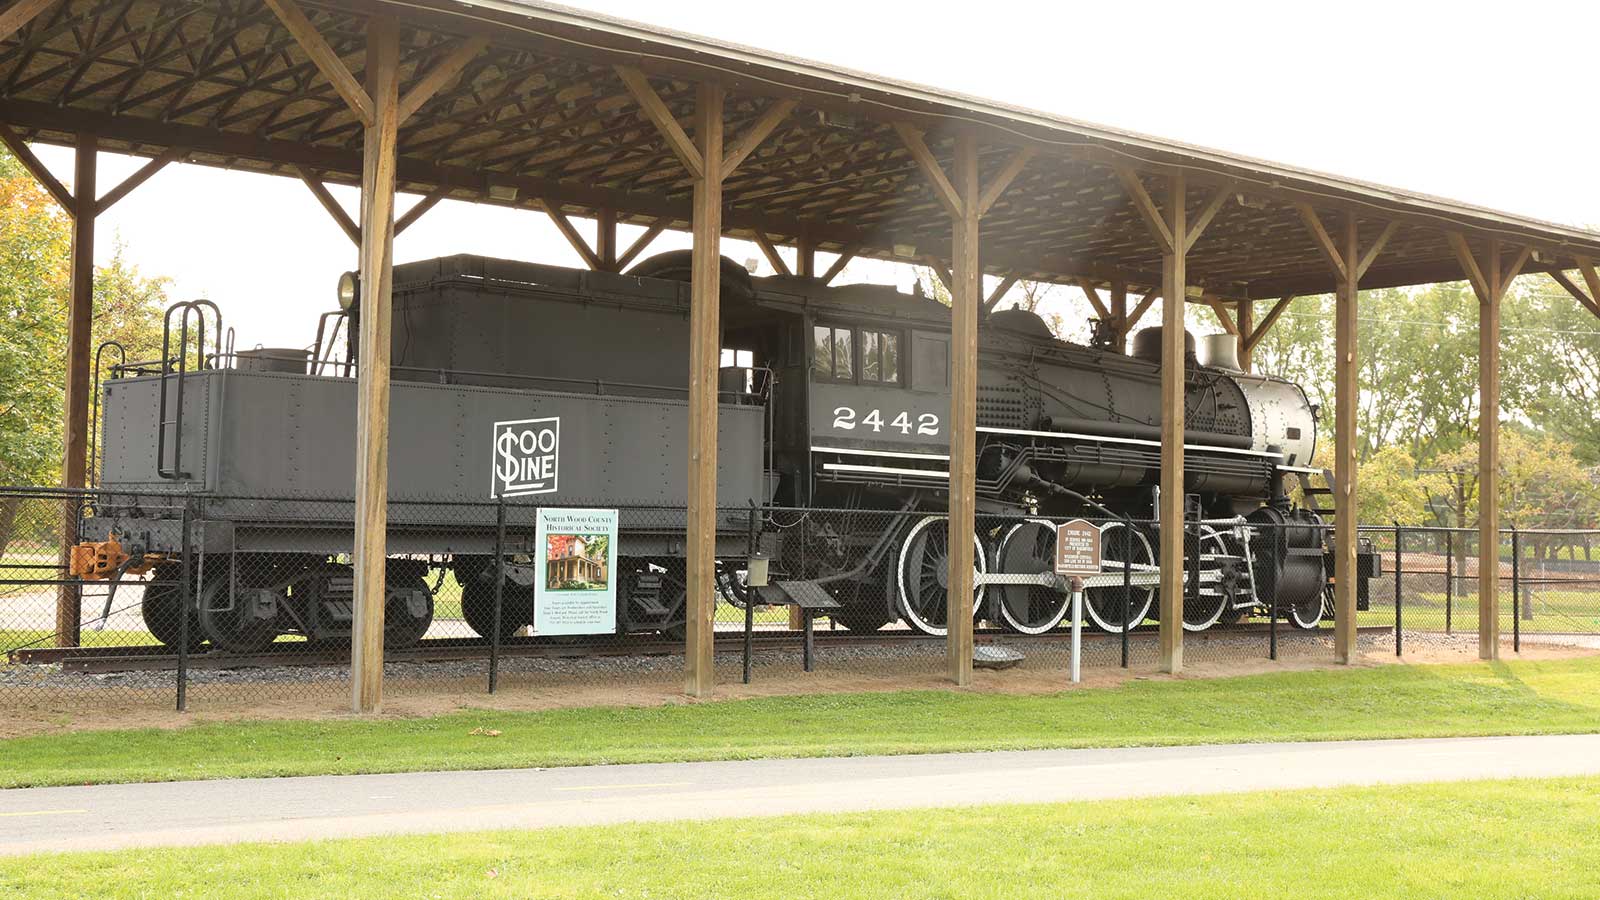 Soo Line Steam Locomotive Wildwood Park Marshfield WI